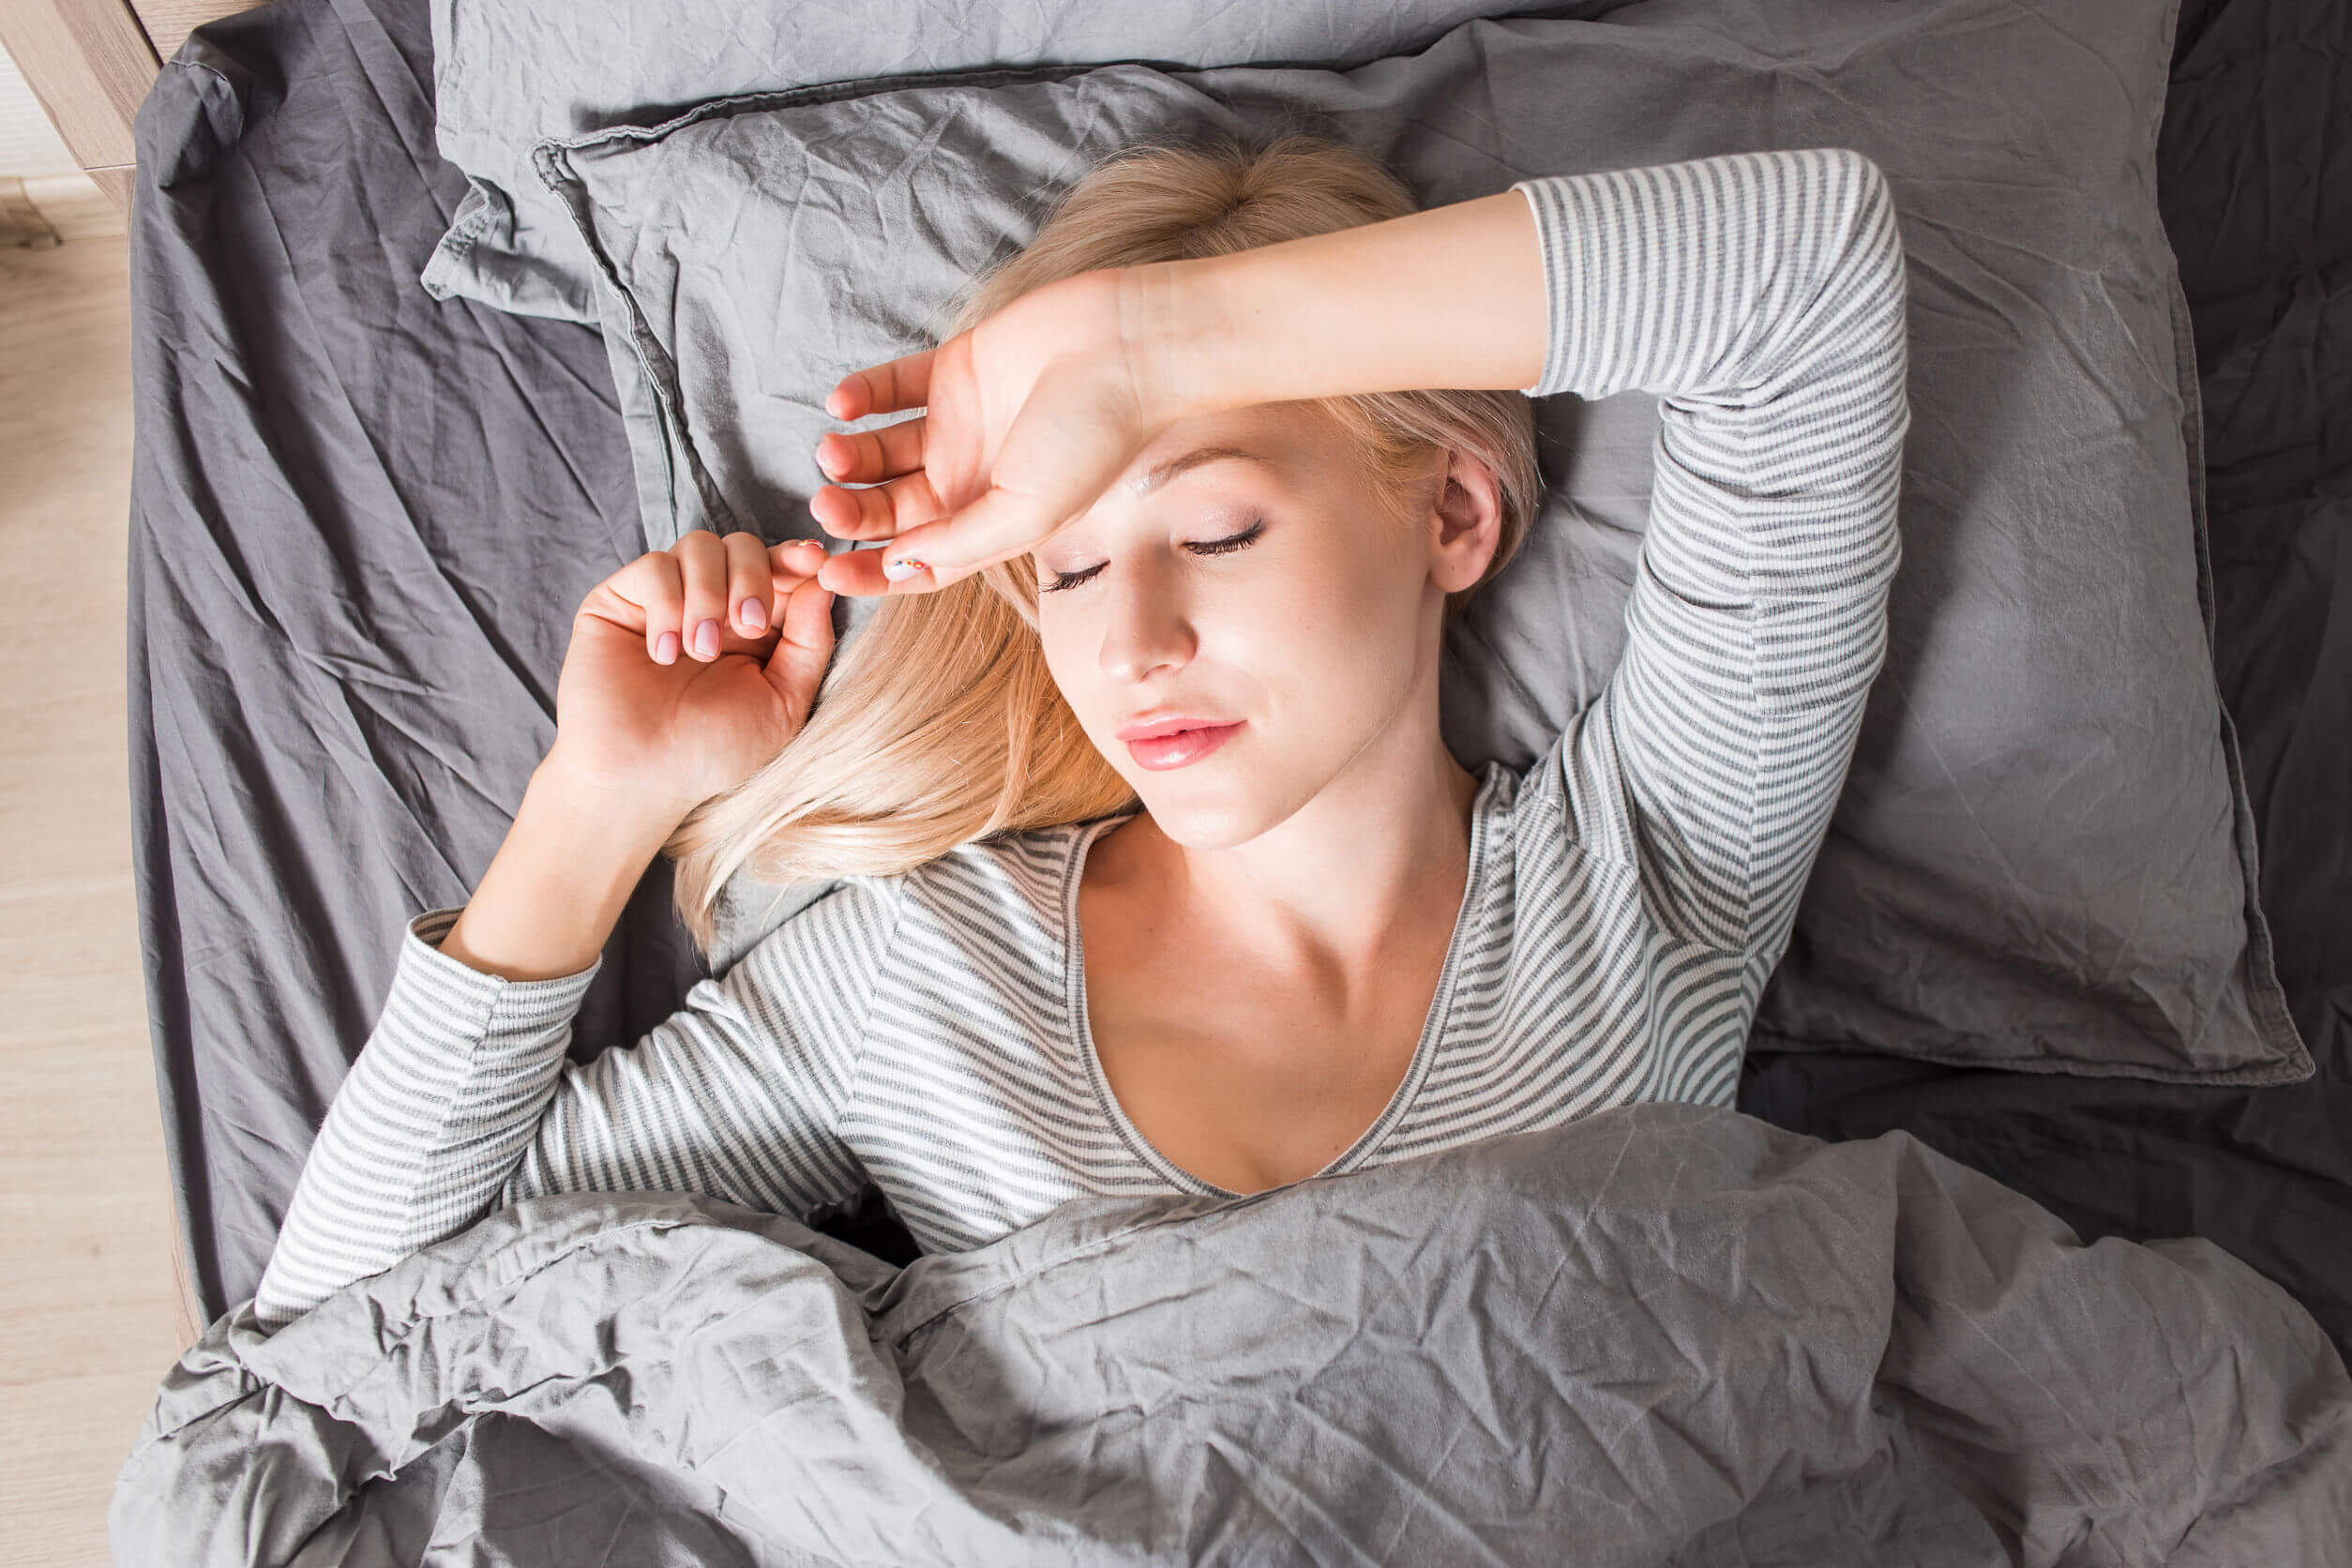 Seguire i consigli per dormire bene la notte aiuta a migliorare la qualità della vita.